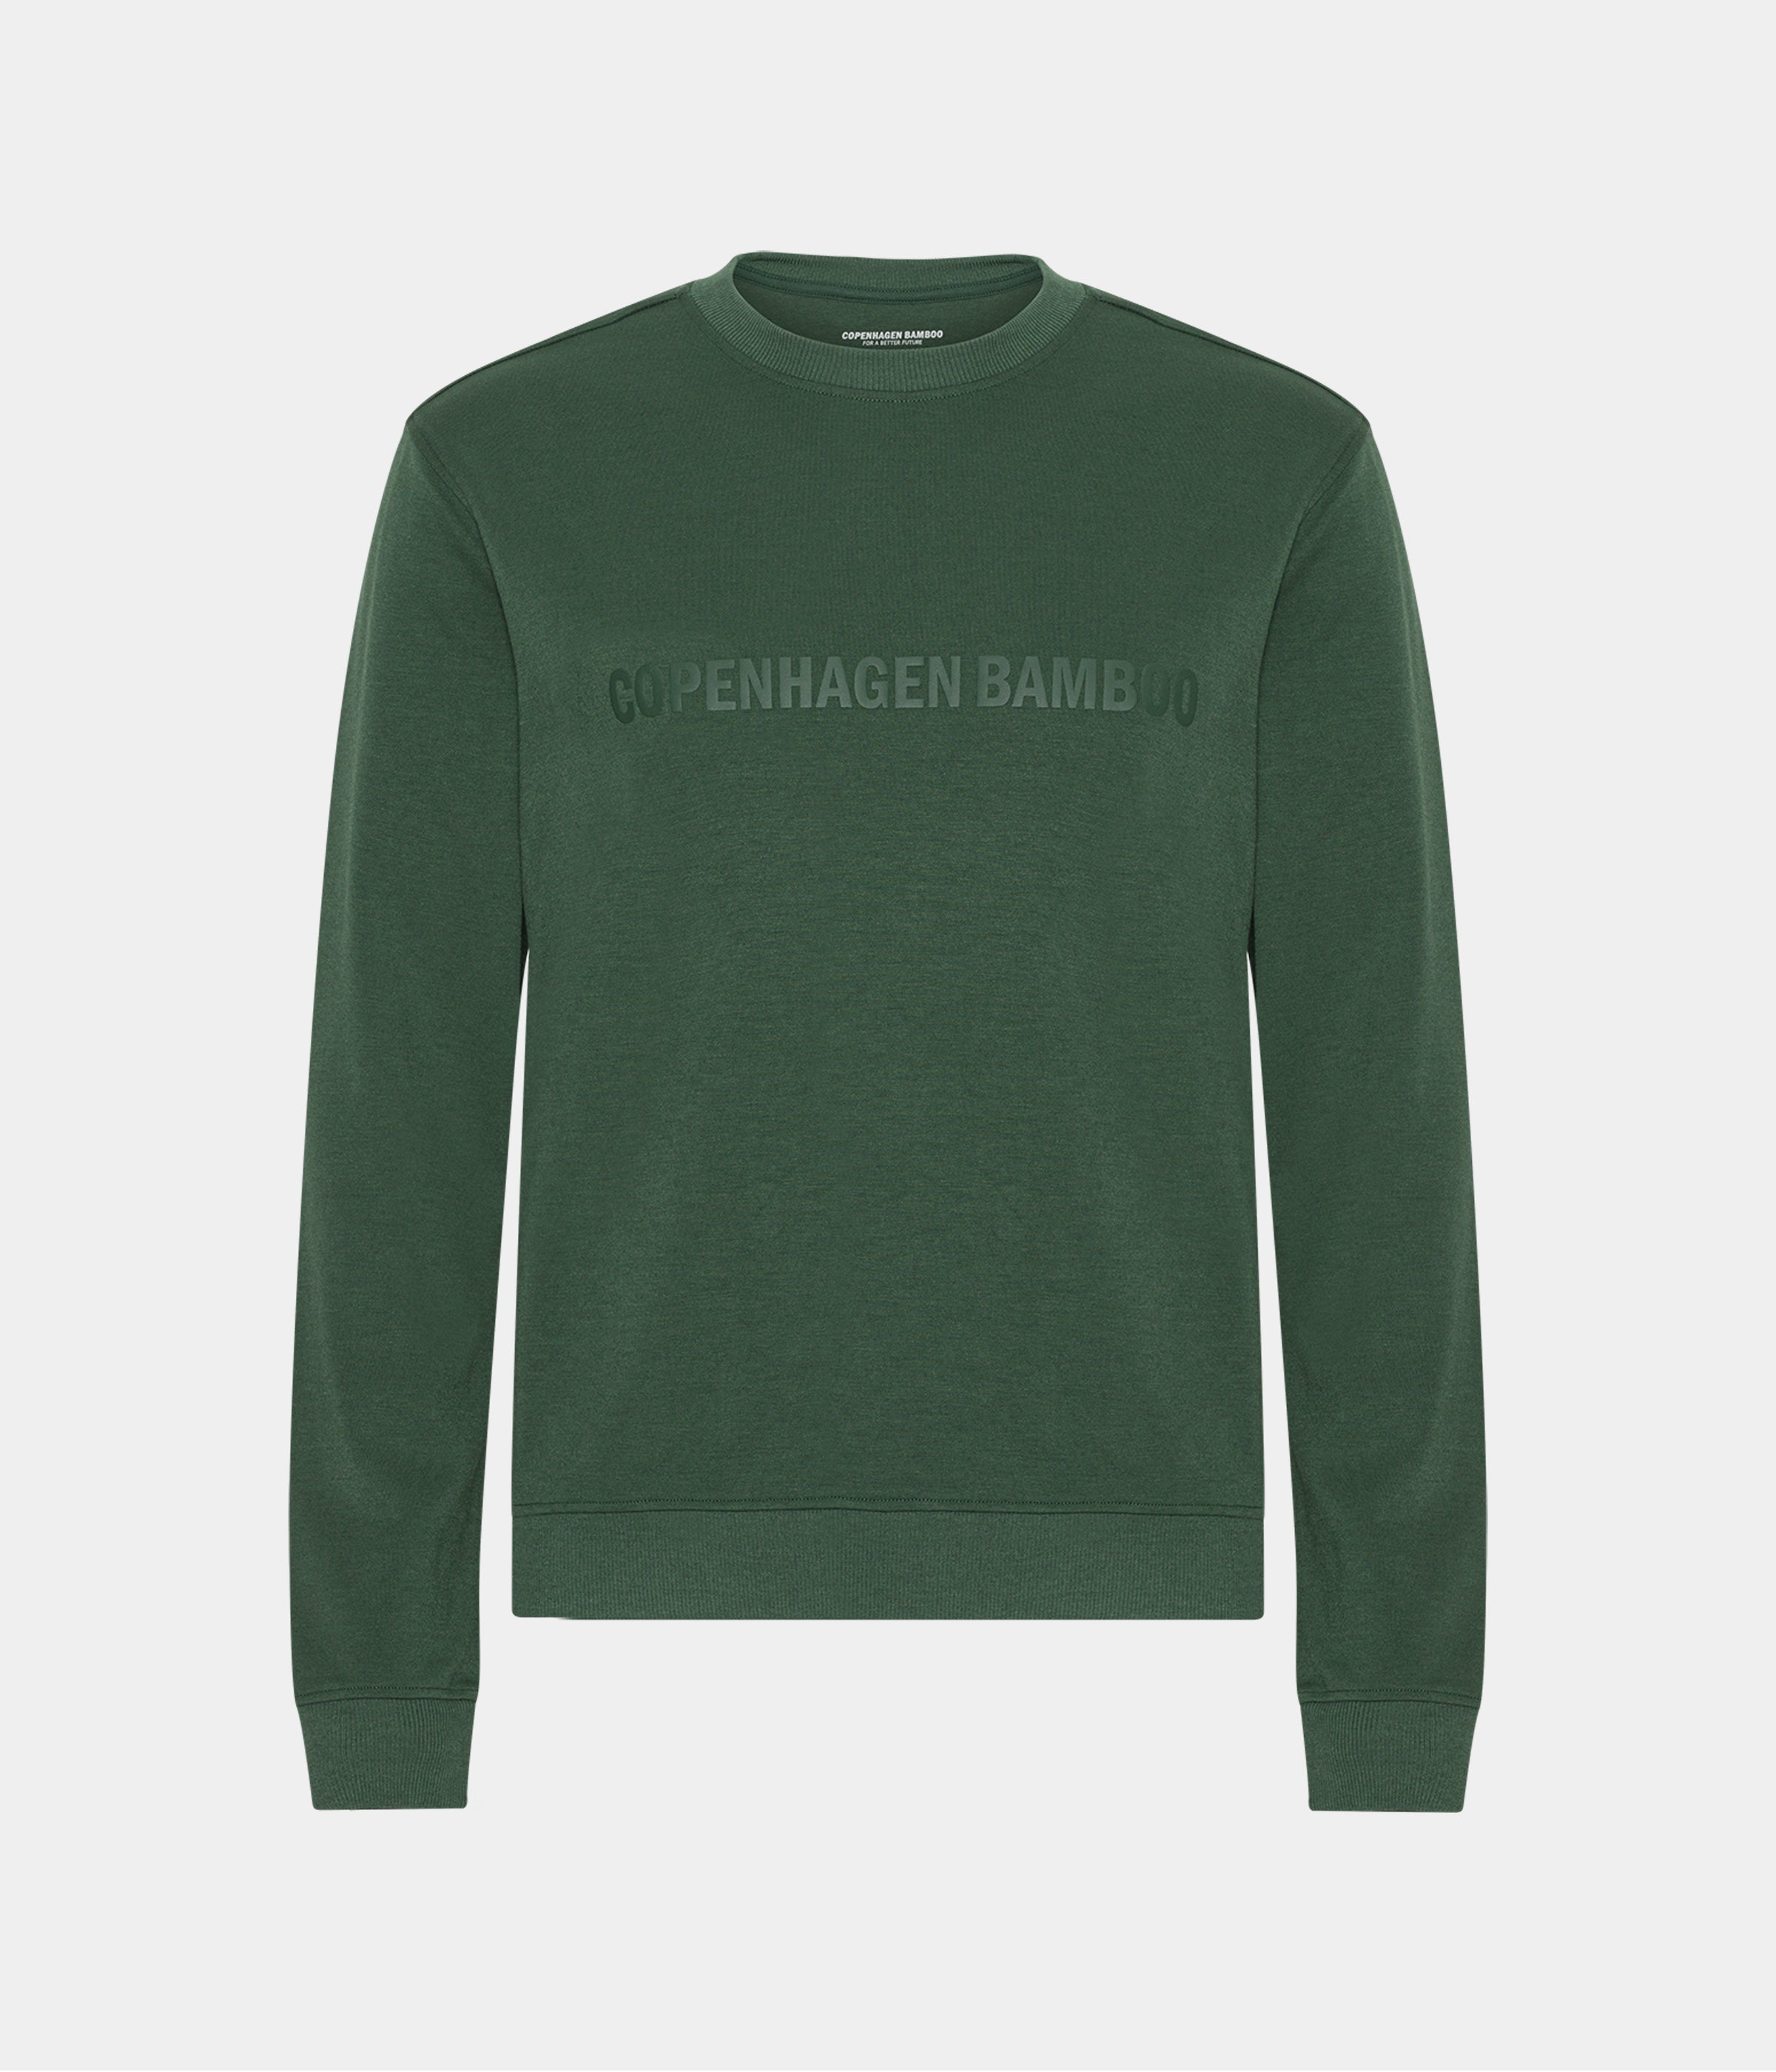 Billede af Grøn bambus sweatshirt til mænd med logo fra Copenhagen Bamboo, XS hos Copenhagen Bamboo